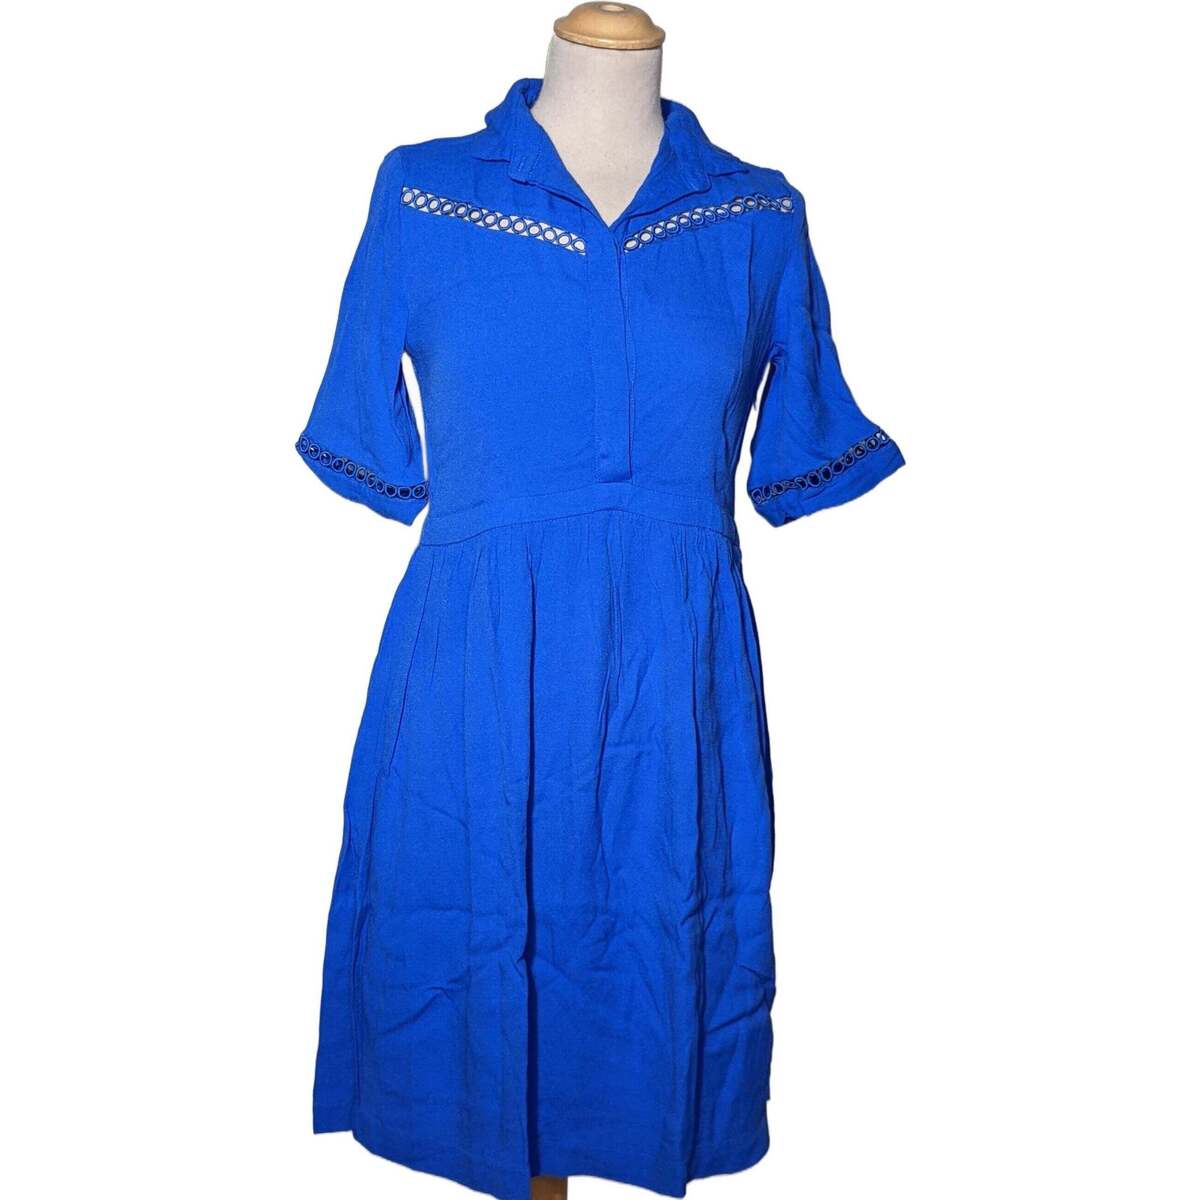 Vêtements Femme Lune Et Lautre robe courte  36 - T1 - S Bleu Bleu